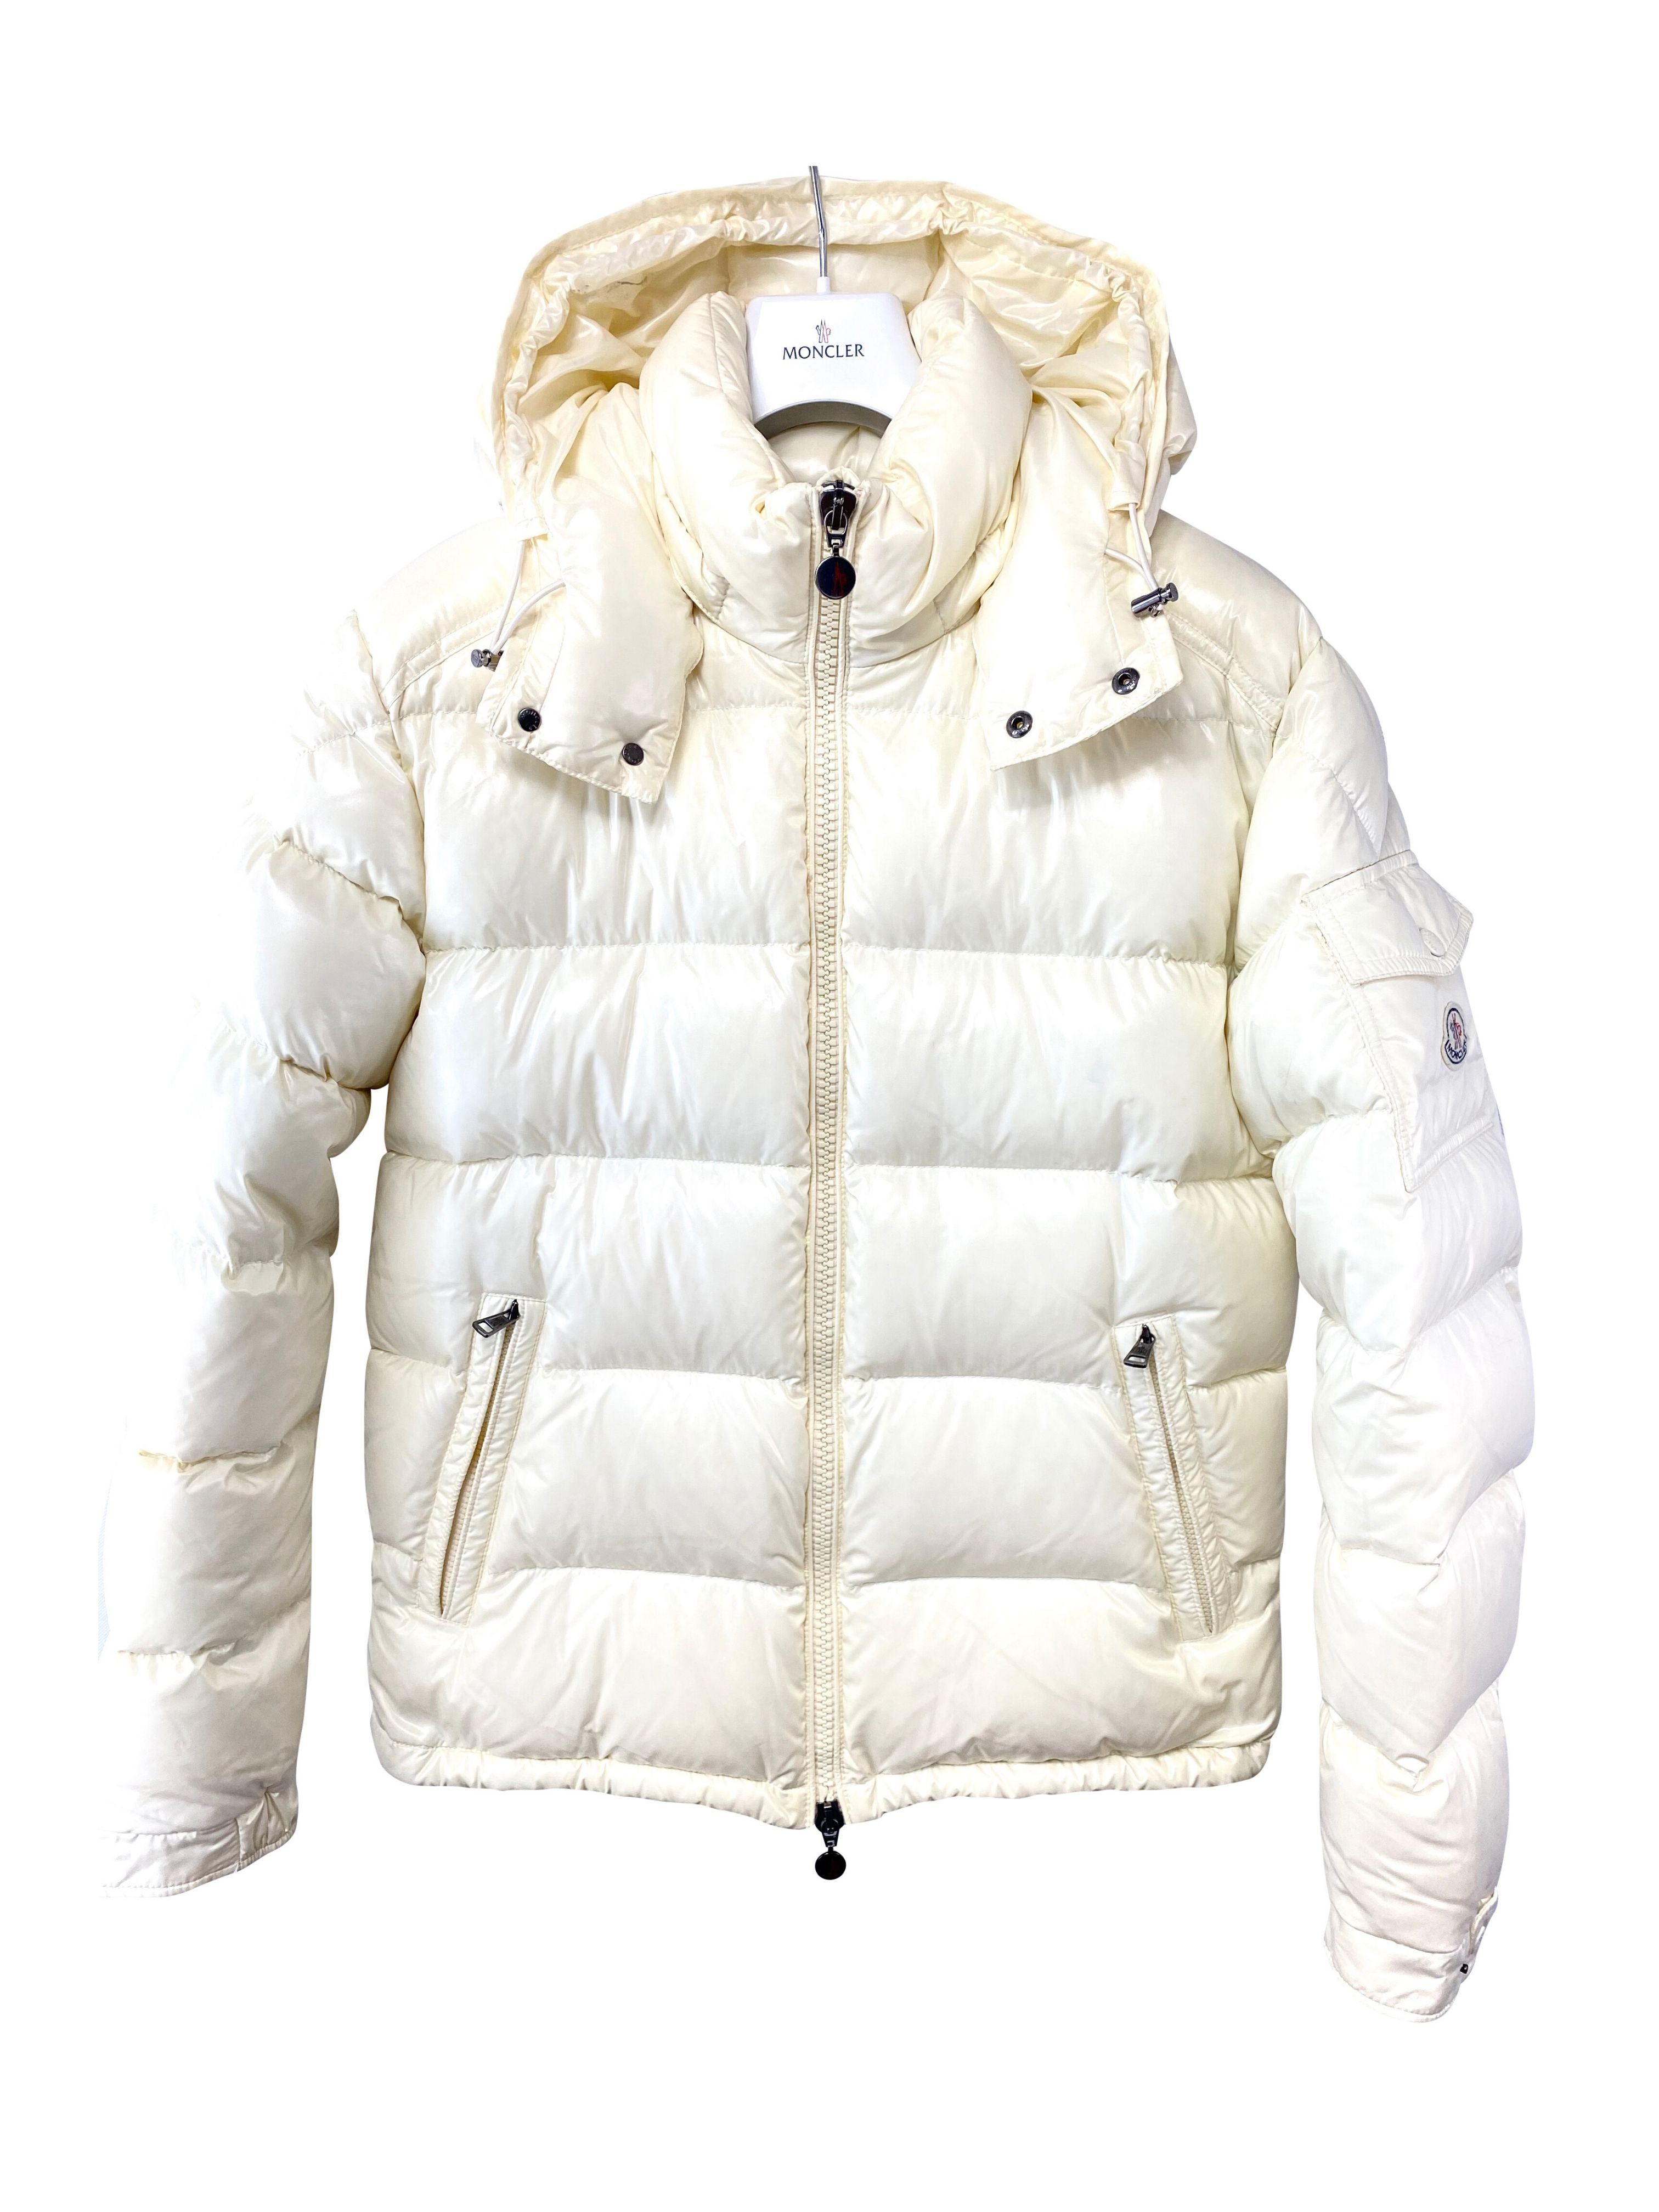 Moncler 'Maya' Style Jacket - Size 4 